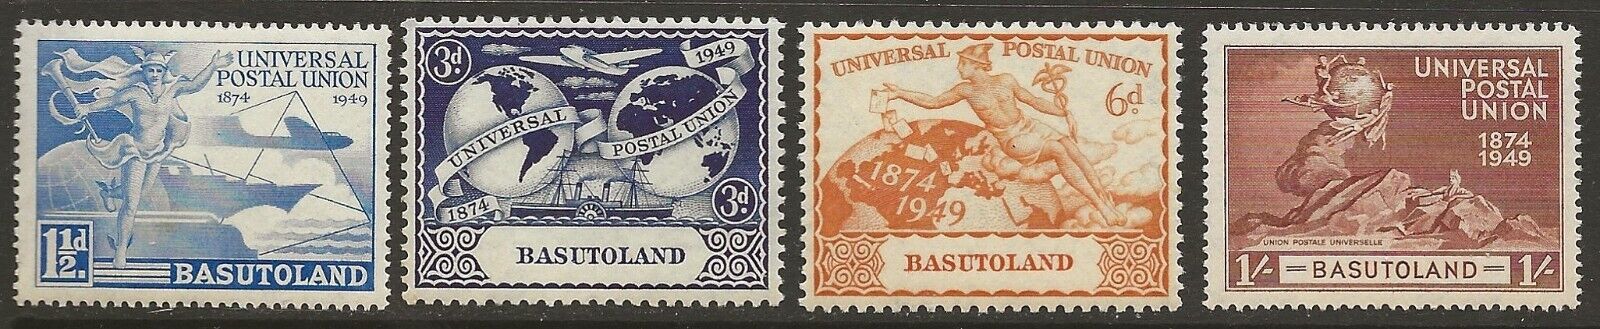 Basutoland 1949. The 75th Anniversary of Universal Postal Union. Unused set.